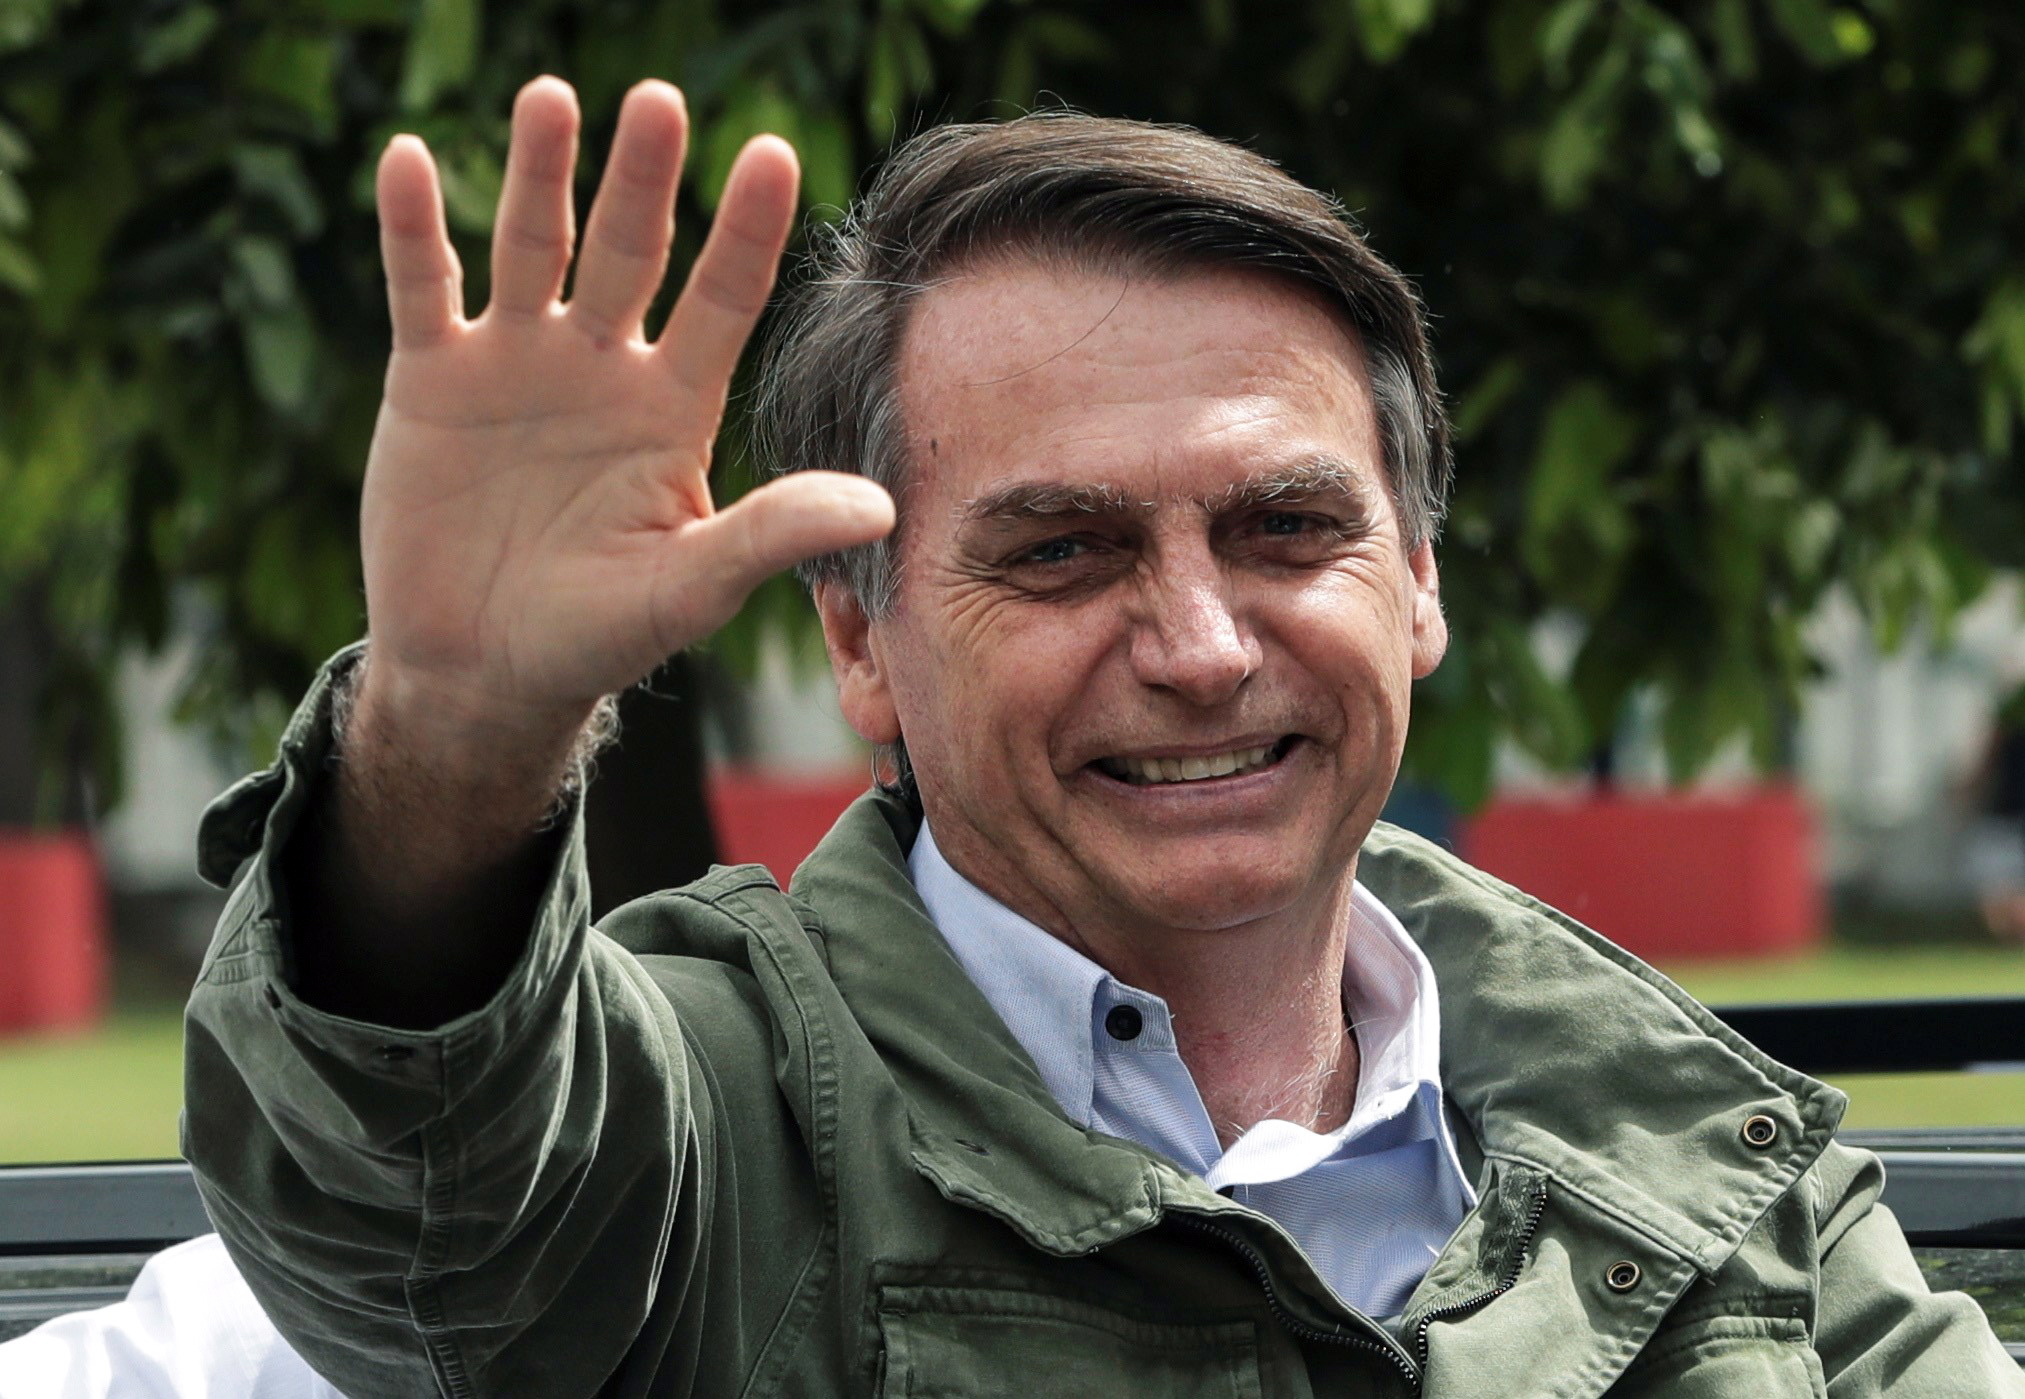 jair bolsonaro is de nieuwe president van brazilie